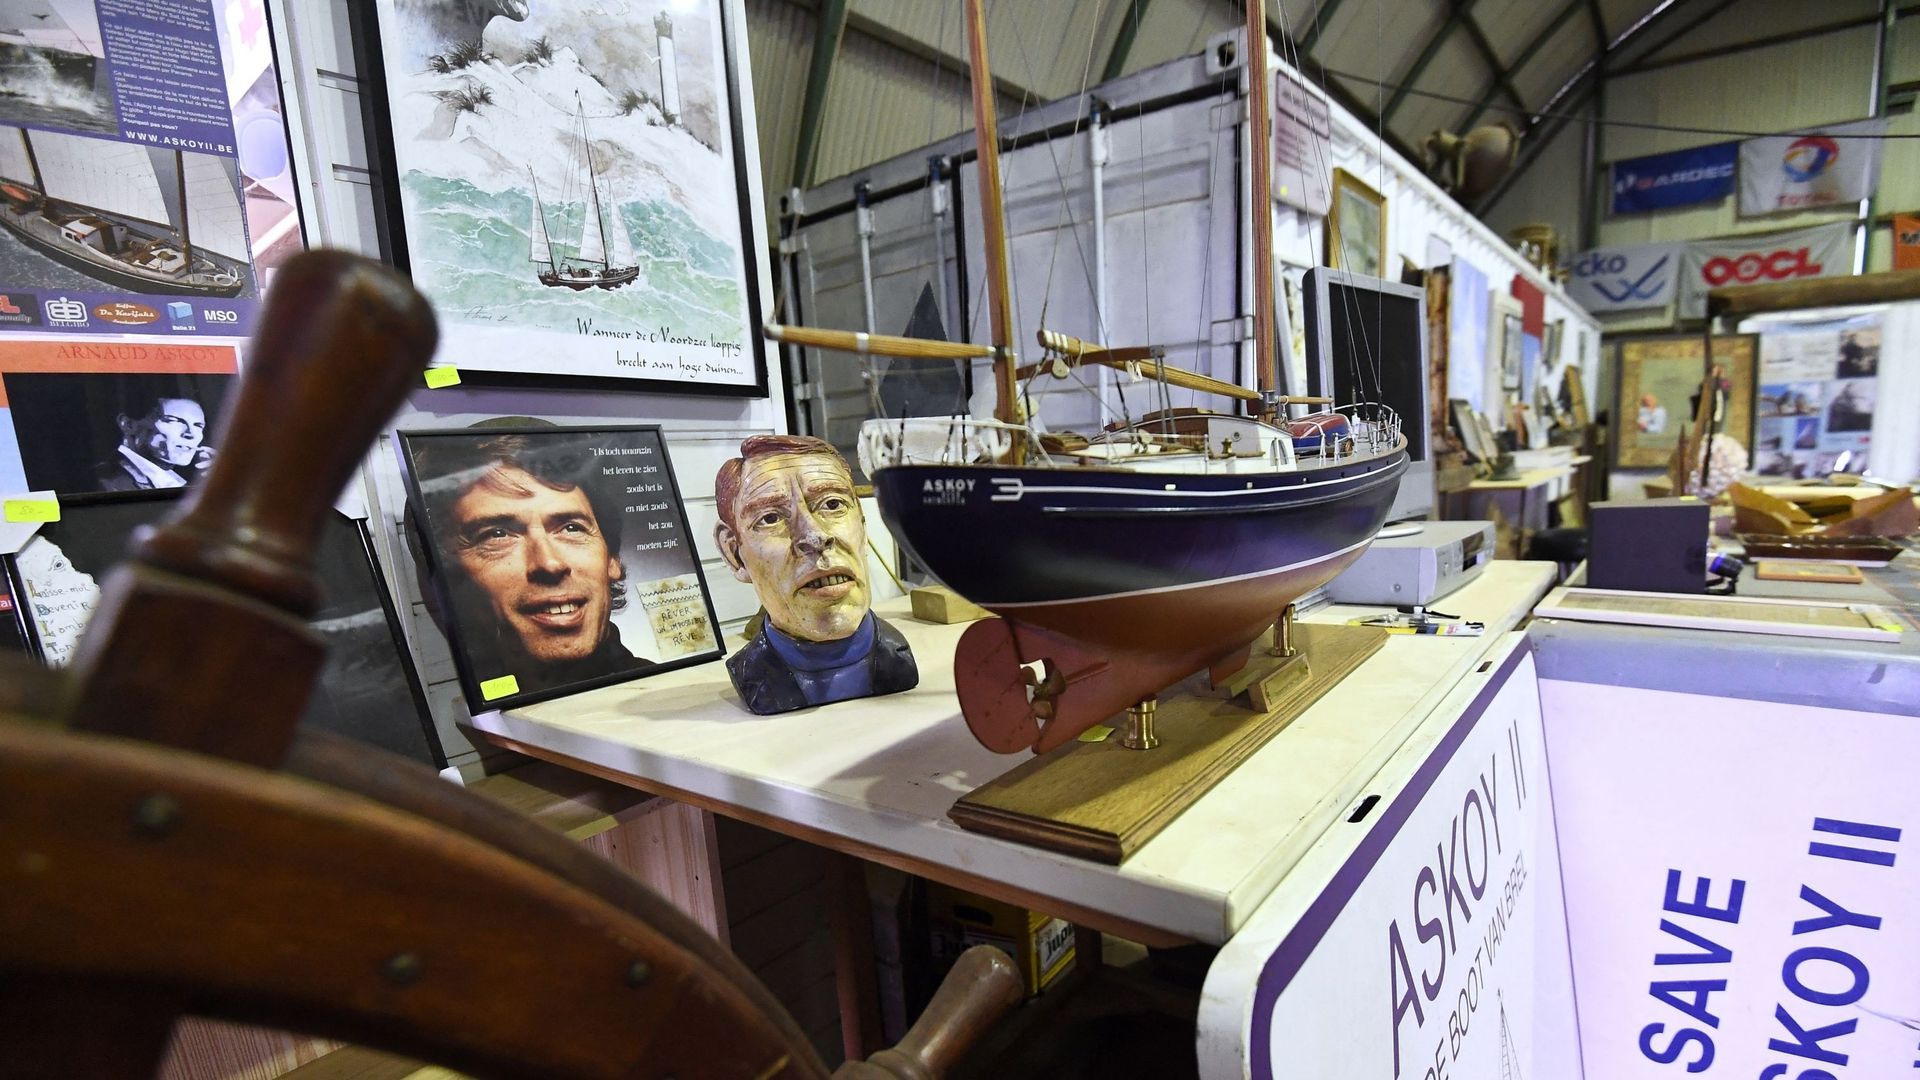 Des souvenirs et des objets à vendre, dédiés au regretté chanteur belge Jacques Brel, sont exposés dans le hangar où le vieux bateau du chanteur, l’Askoy II, est en cours de restauration dans le port de Zeebrugge. Photo prise le 3 avril 2018.